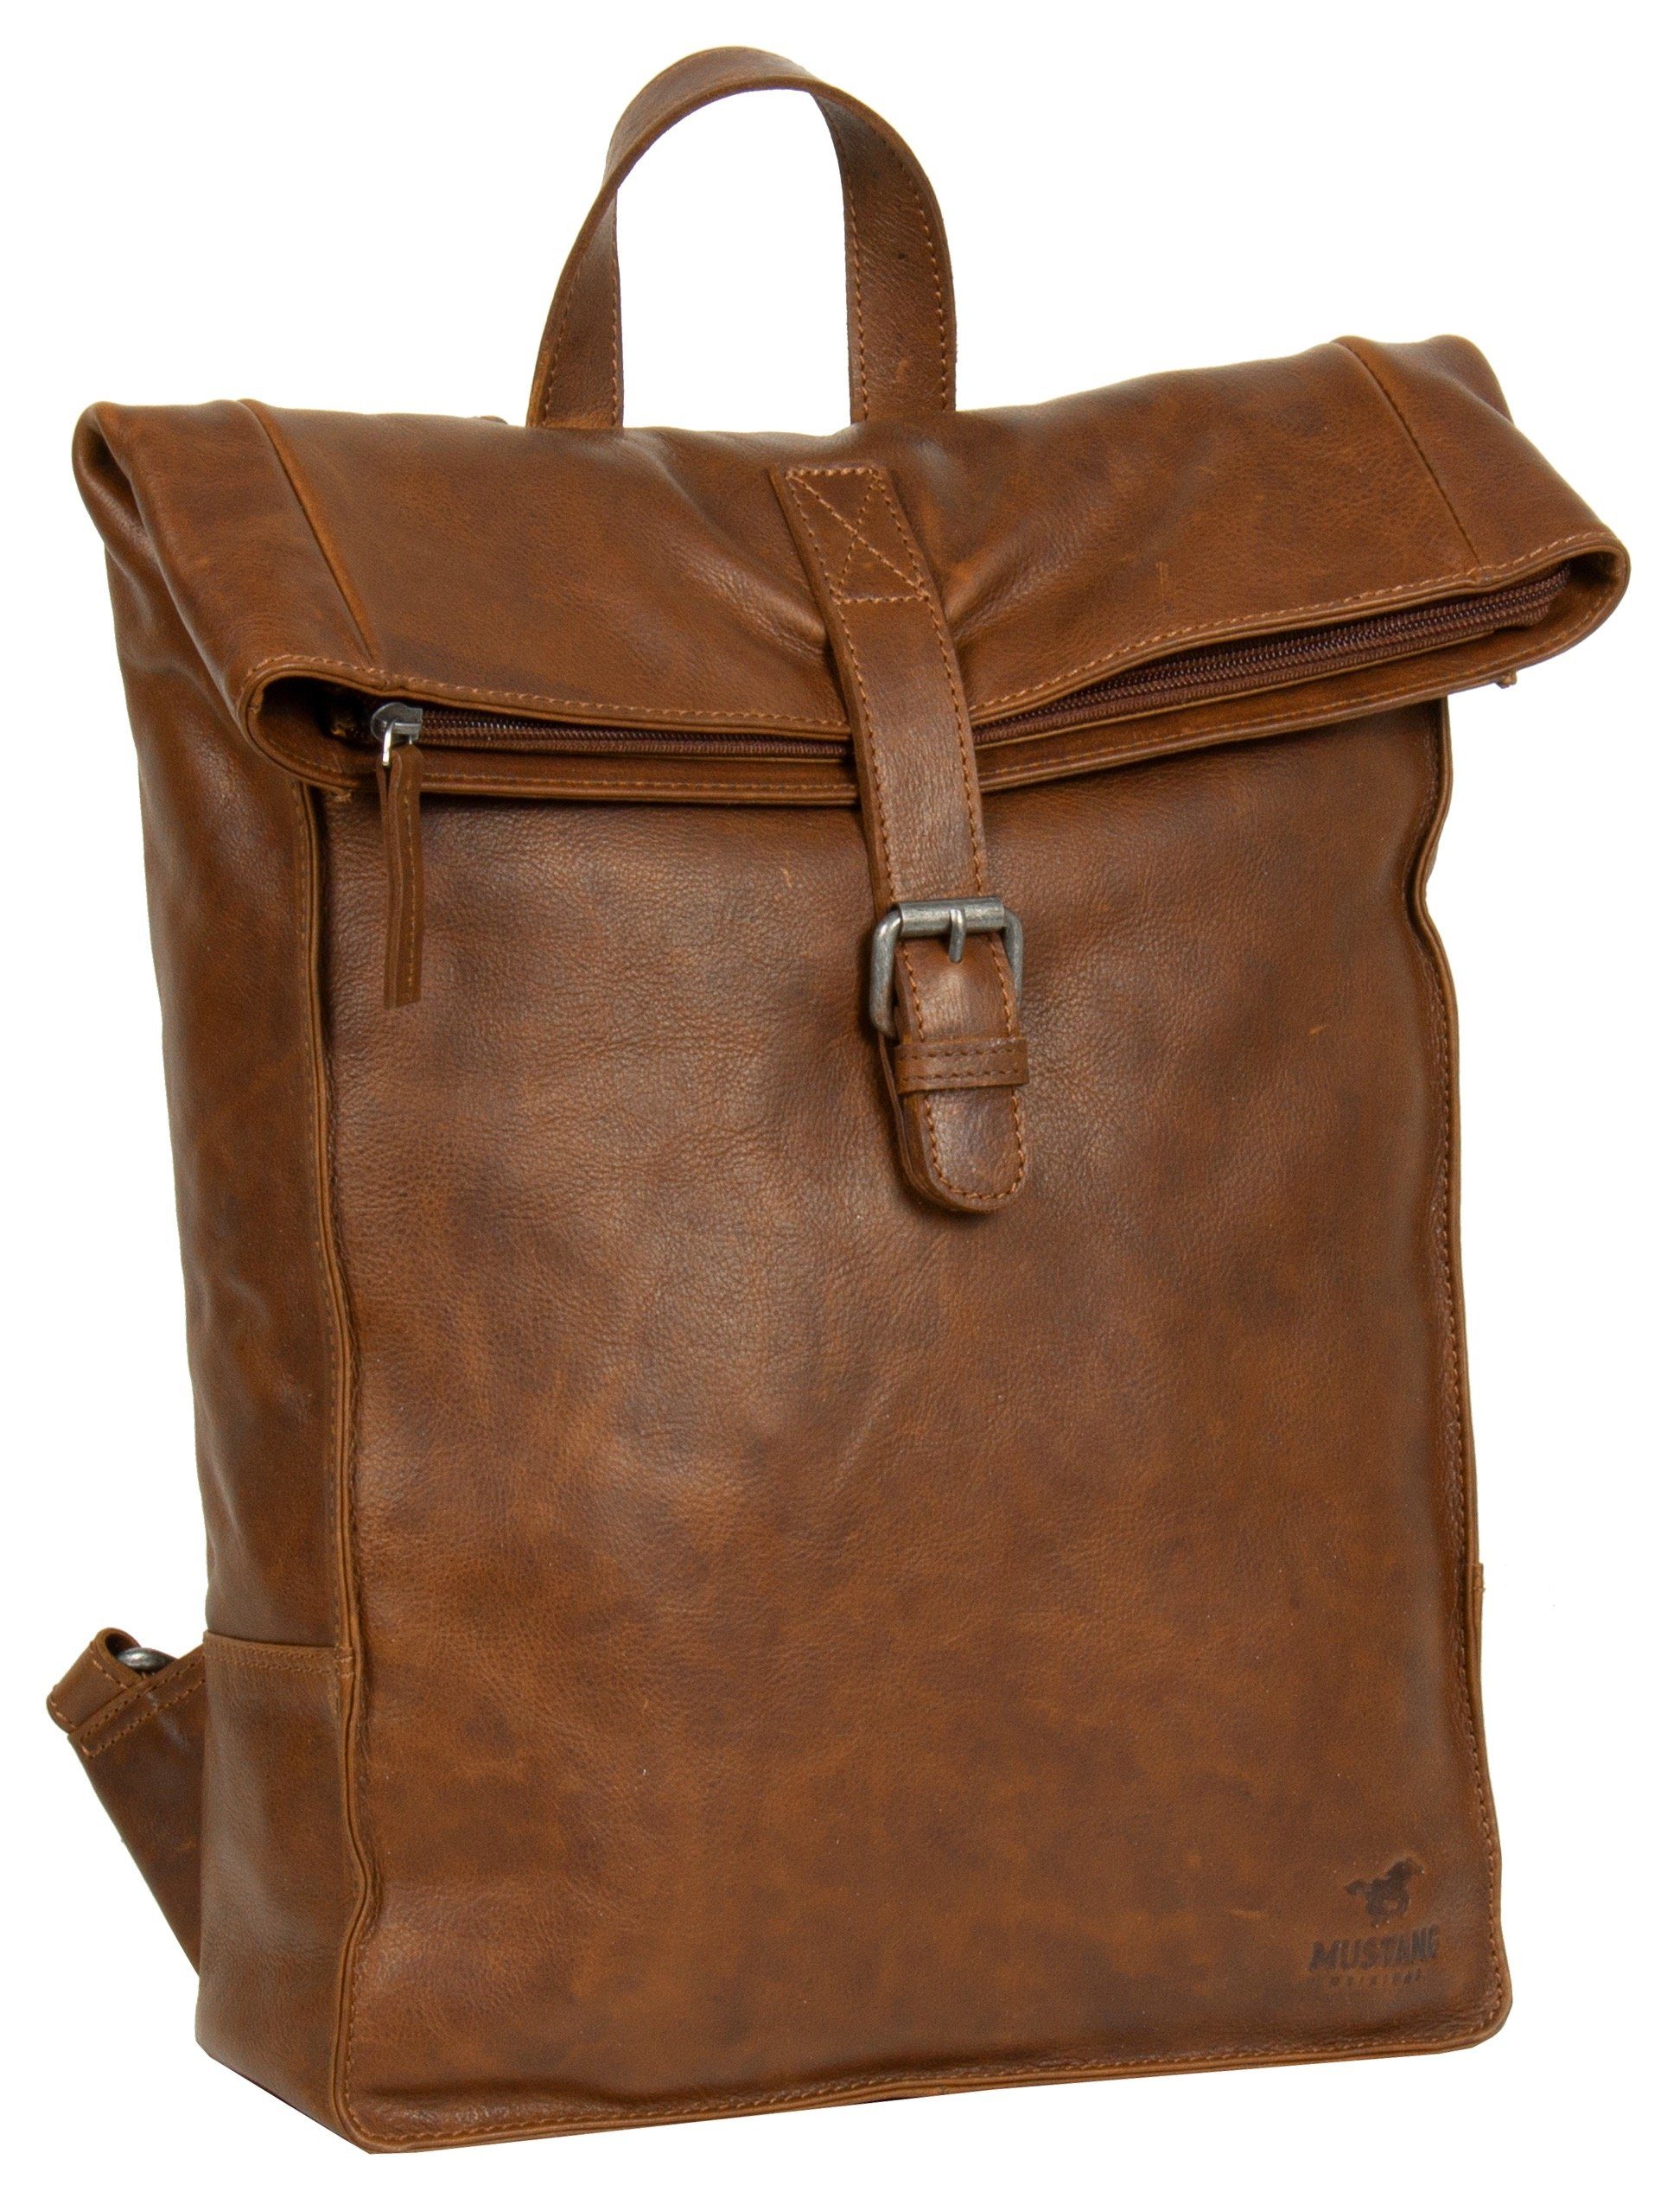 MUSTANG Cityrucksack Memphis backpack flap, aus hochwertigem Leder,  Reißverschluss-Hauptfach mit Schnalle